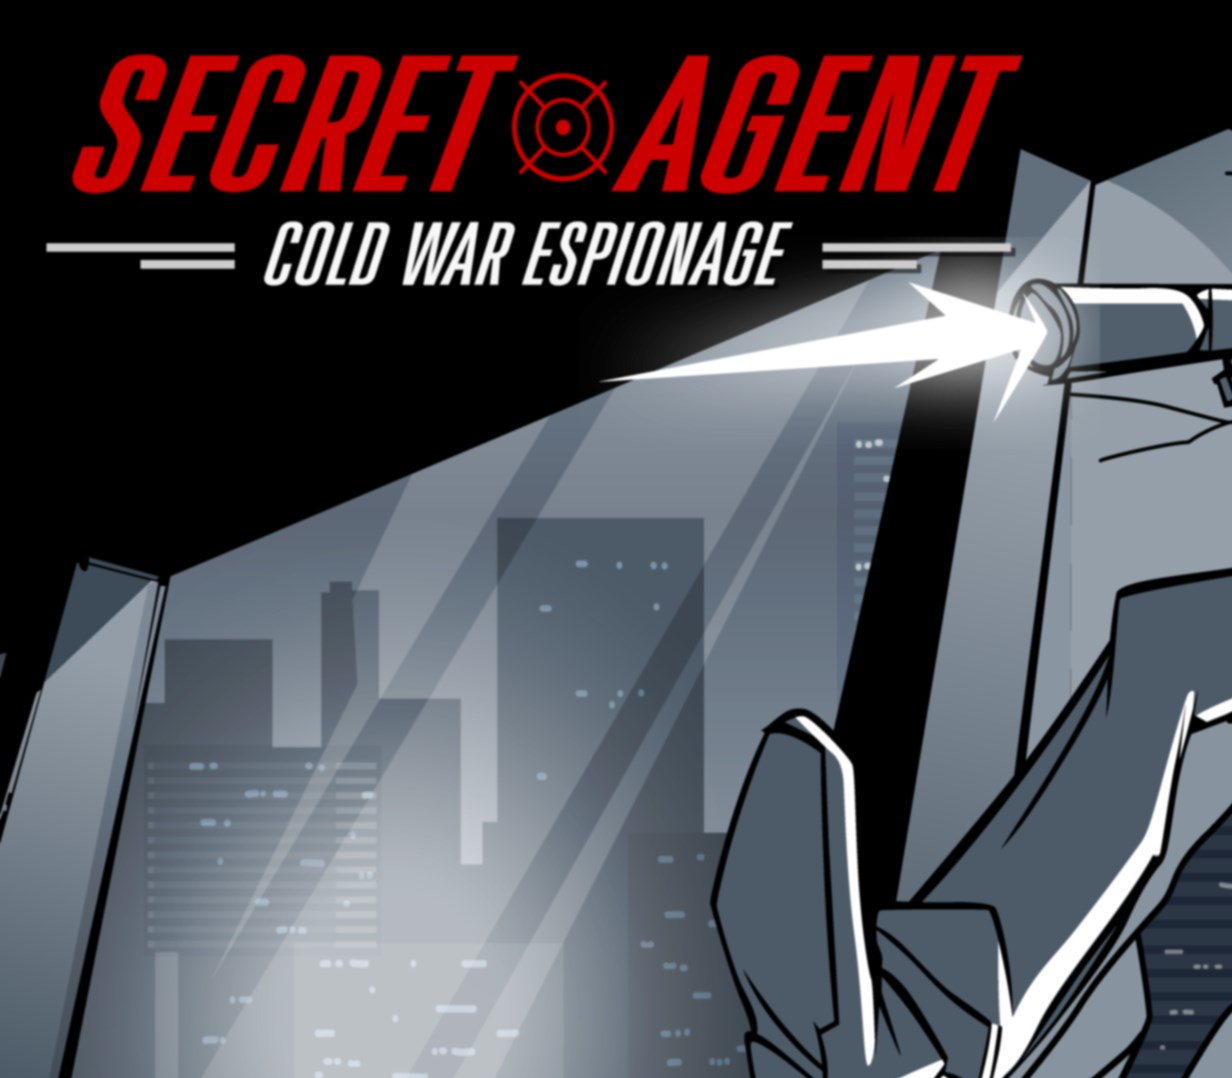 Secret Agent: Cold War Espionage EU PS4